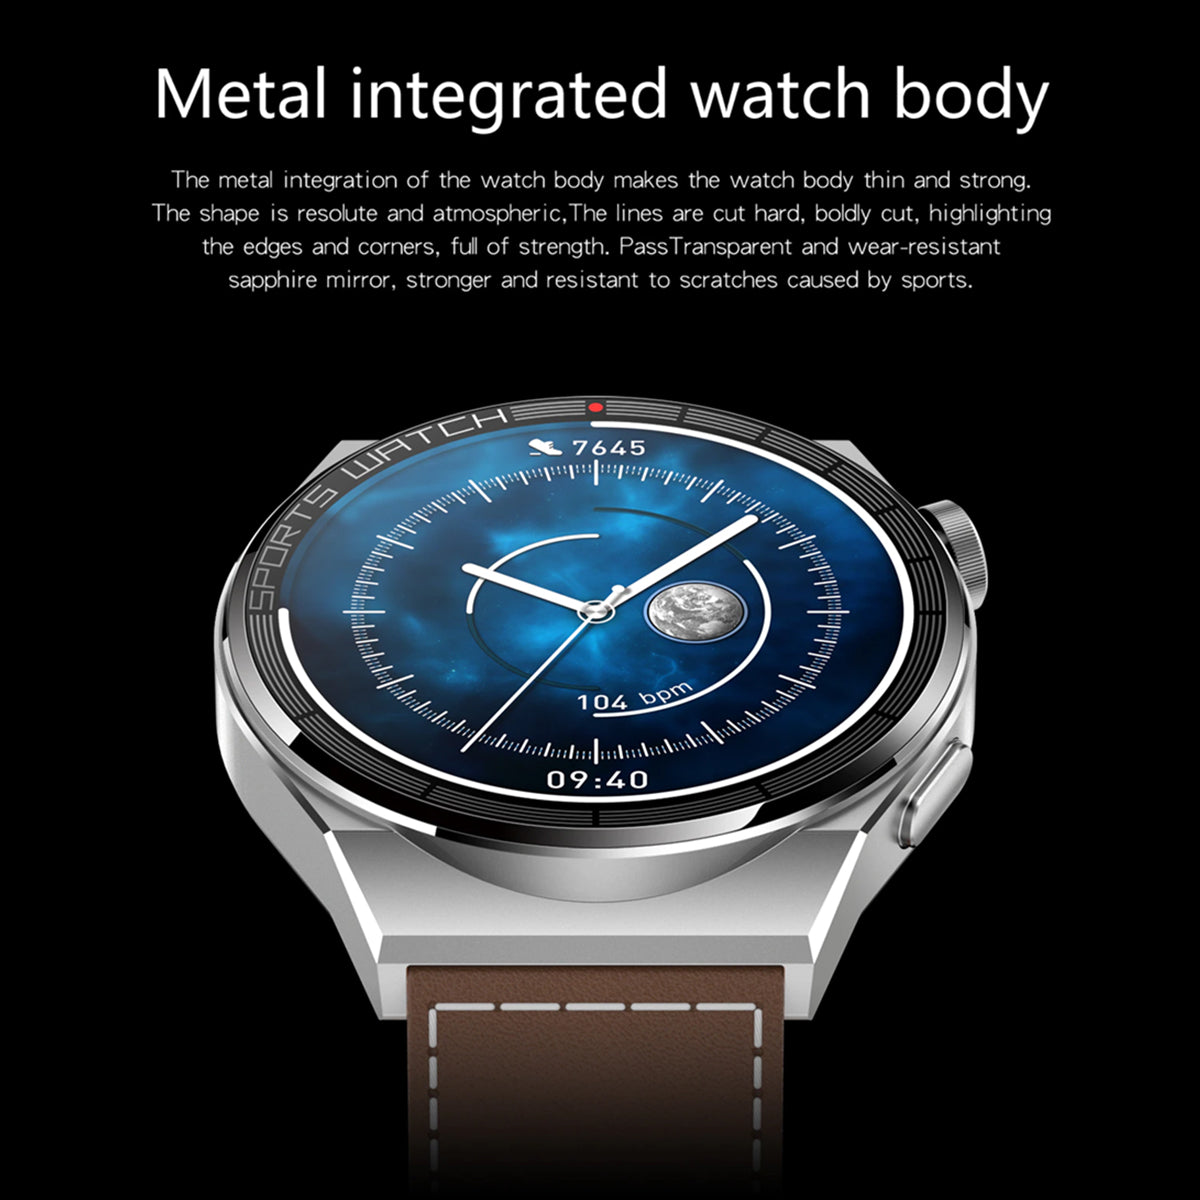 Fralugio Smart Watch Reloj Inteligente Kt62 Metal Full Touch